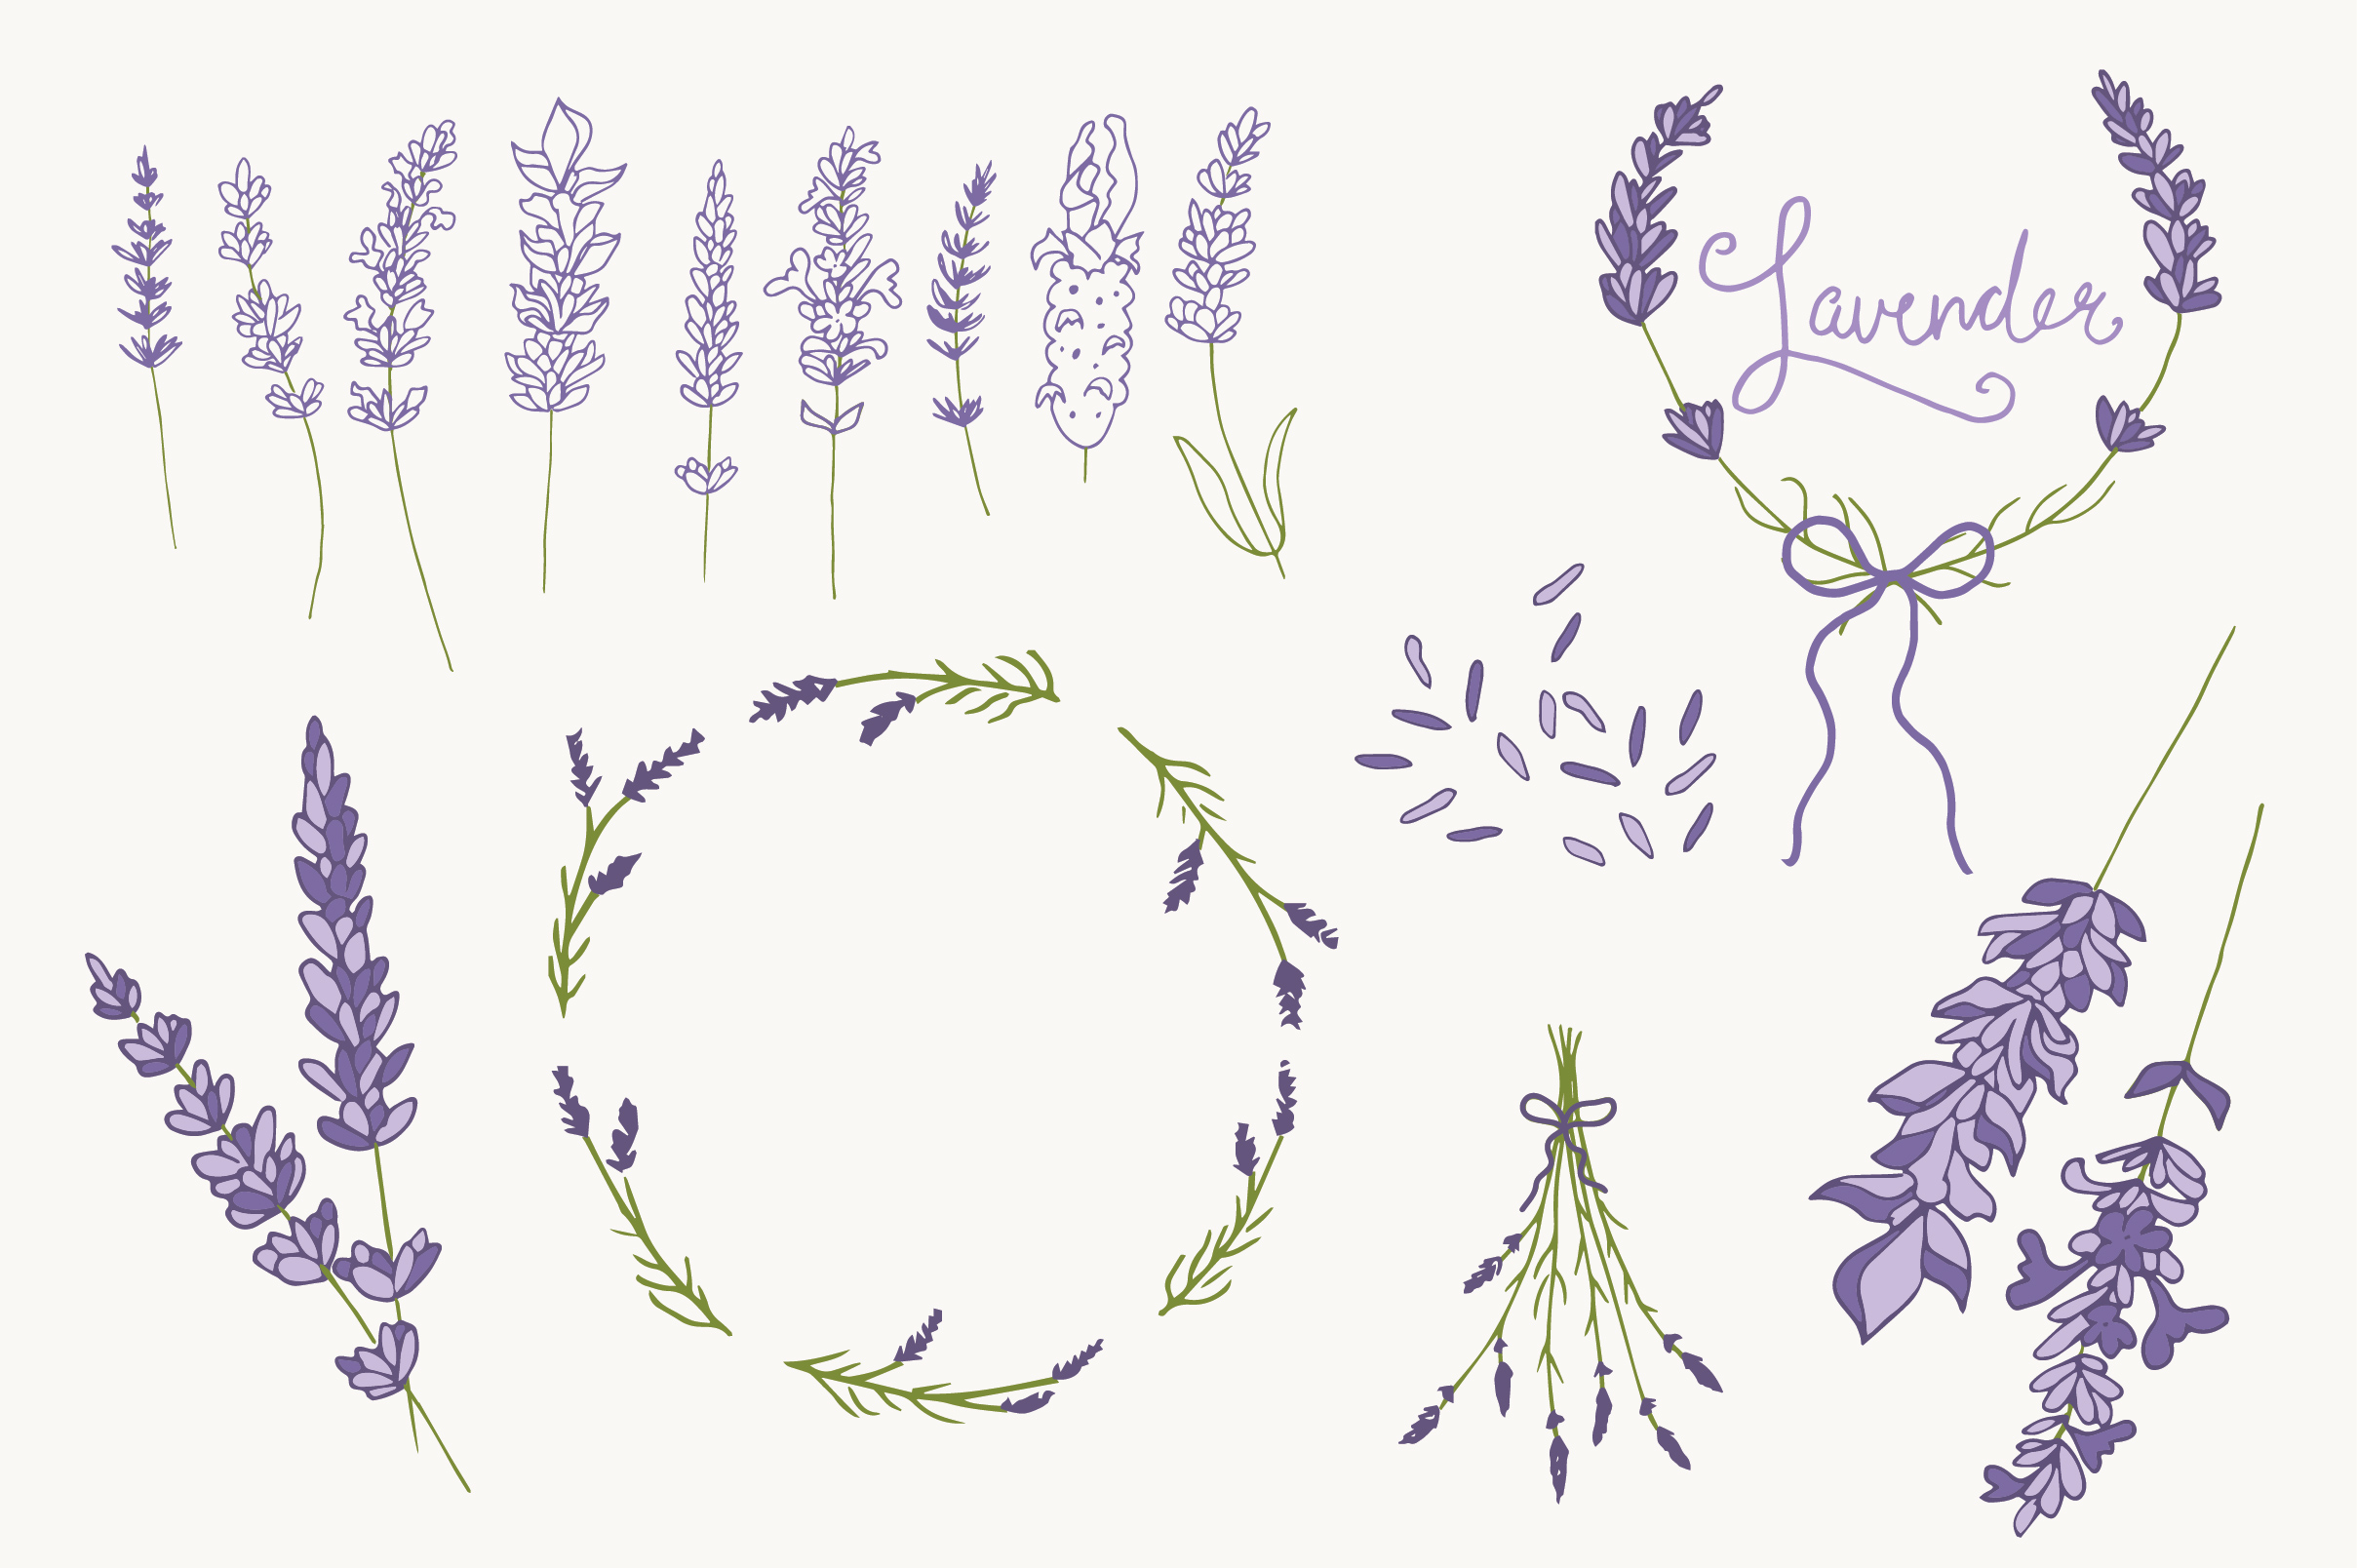 lavender illustration vector free download